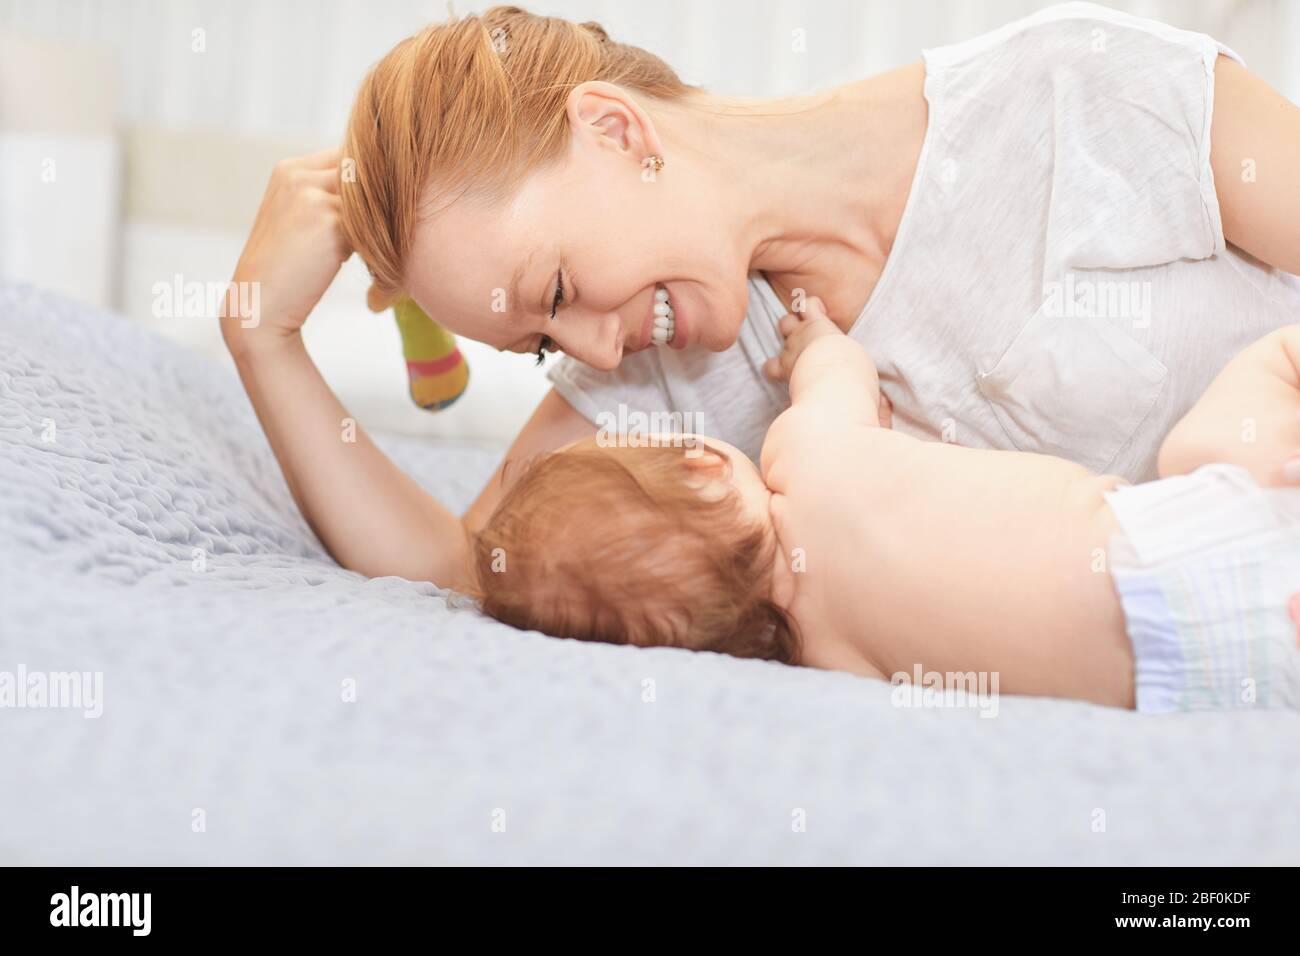 Mutter umarmte ihr Baby auf einem Bett Stockfoto